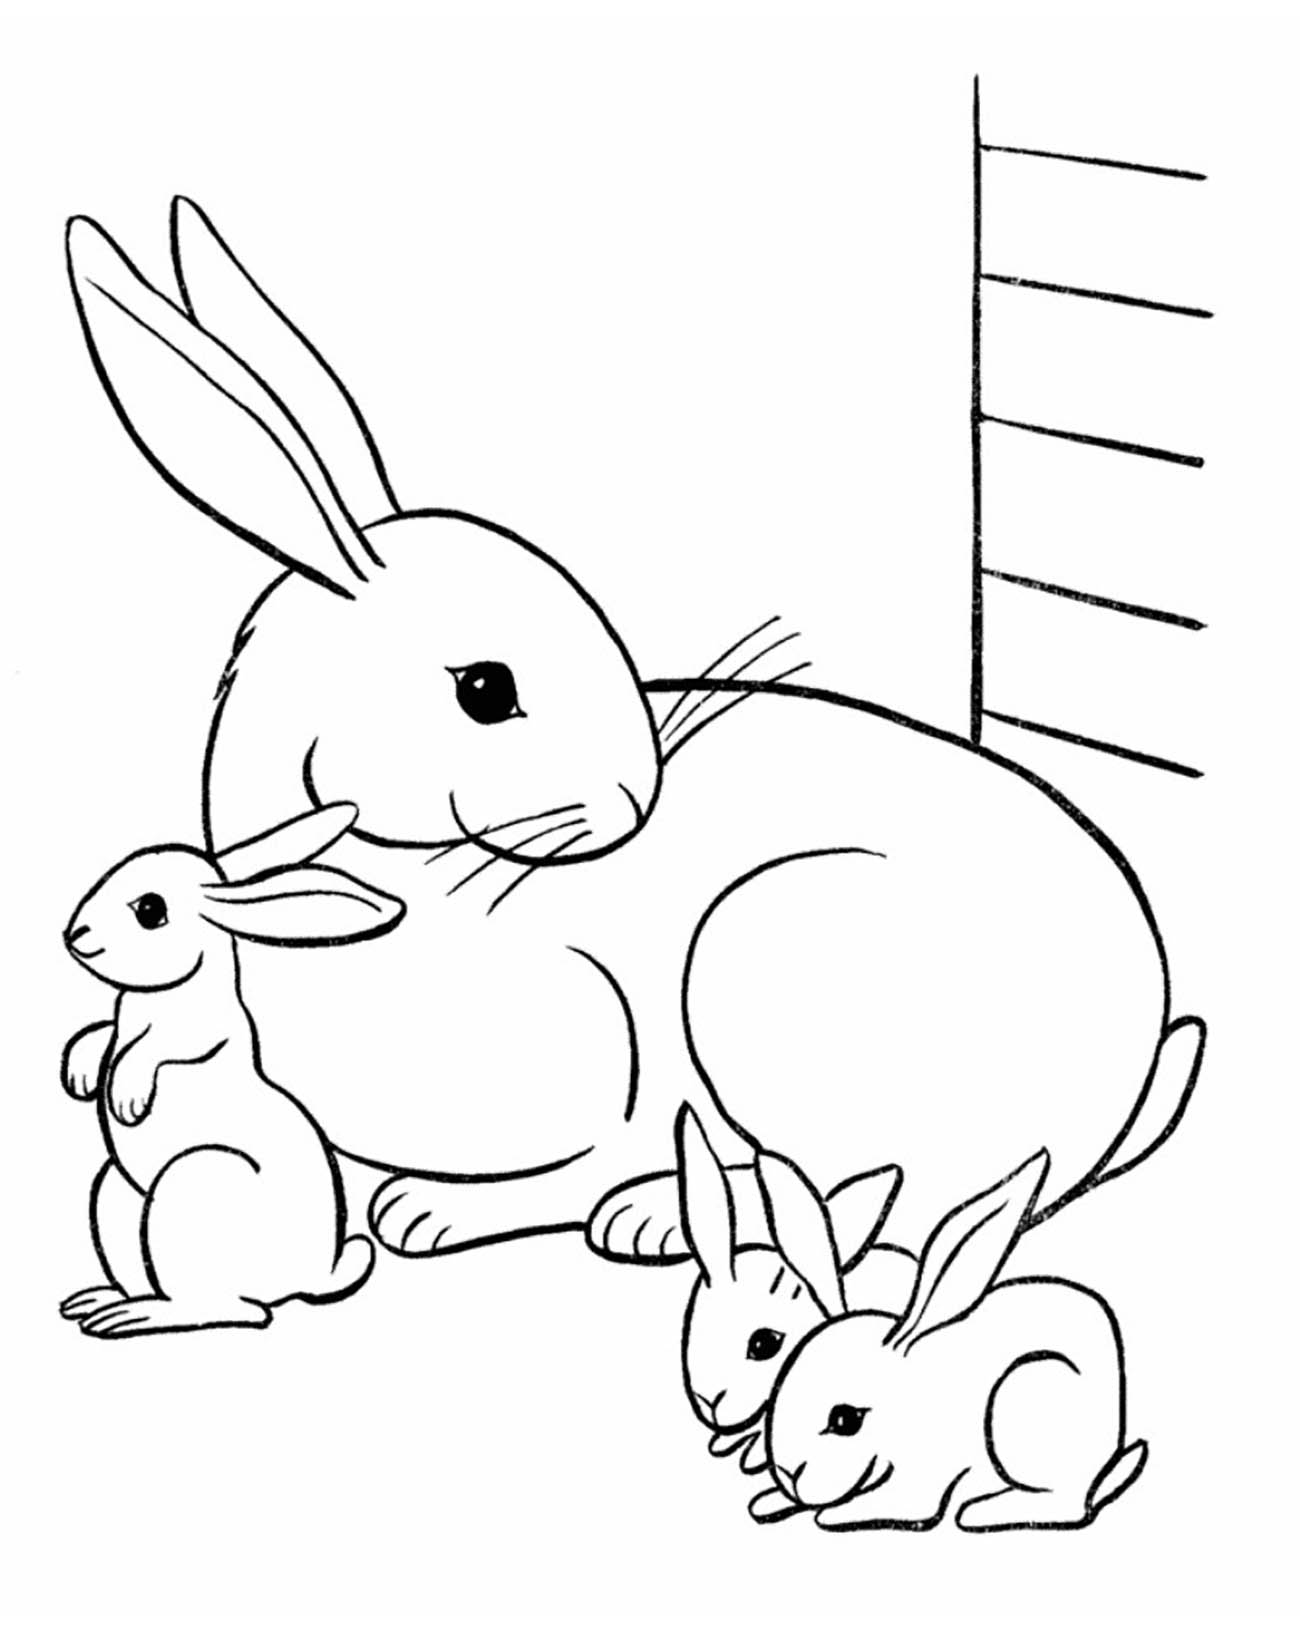 Una encantadora familia de Conejo en su solapa.